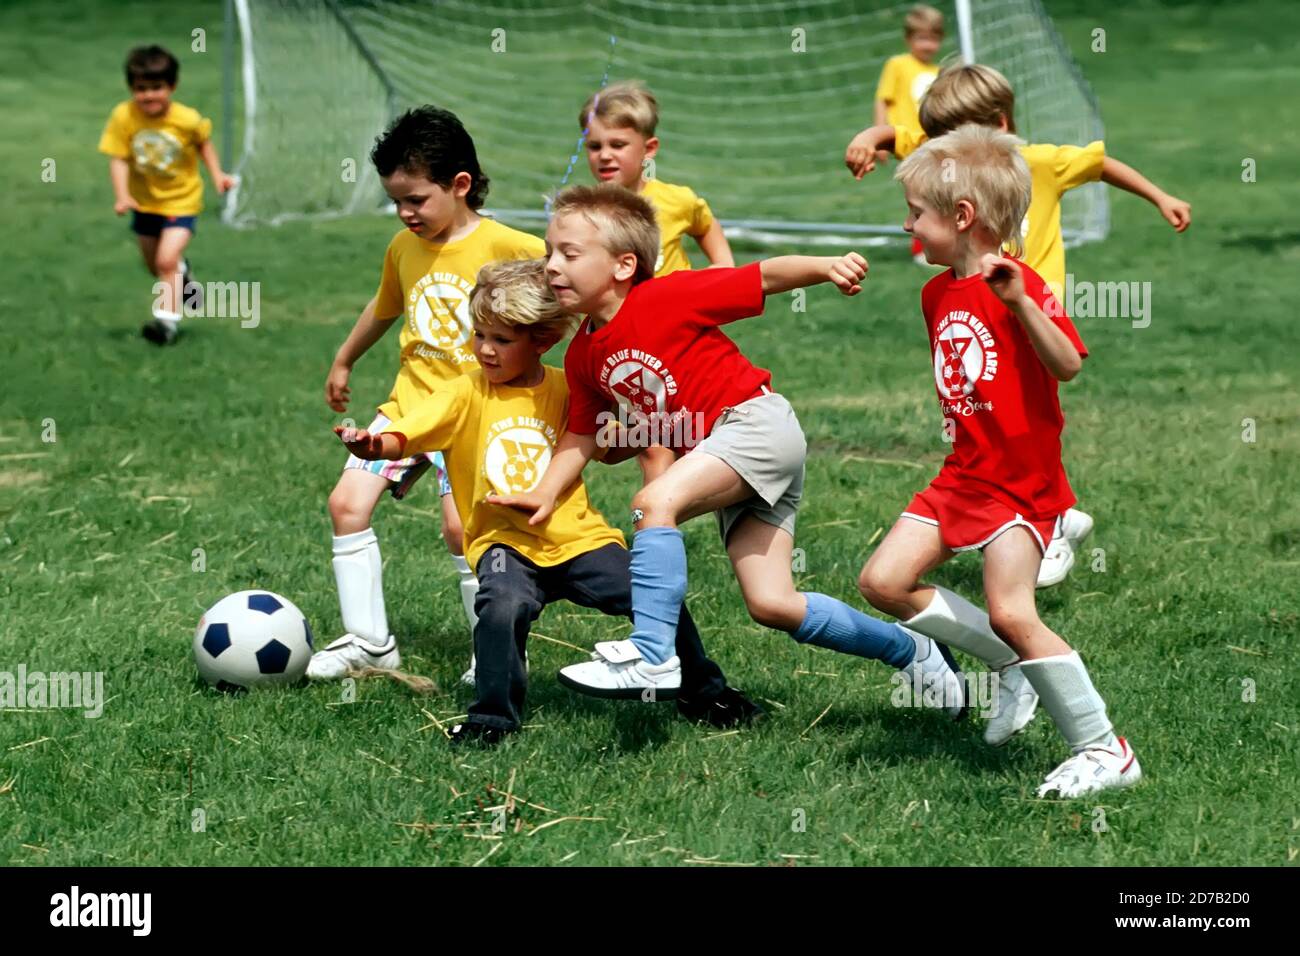 Fußball-Action mit Jungen im Alter von 6 - 9 Jahren Alter Stockfoto